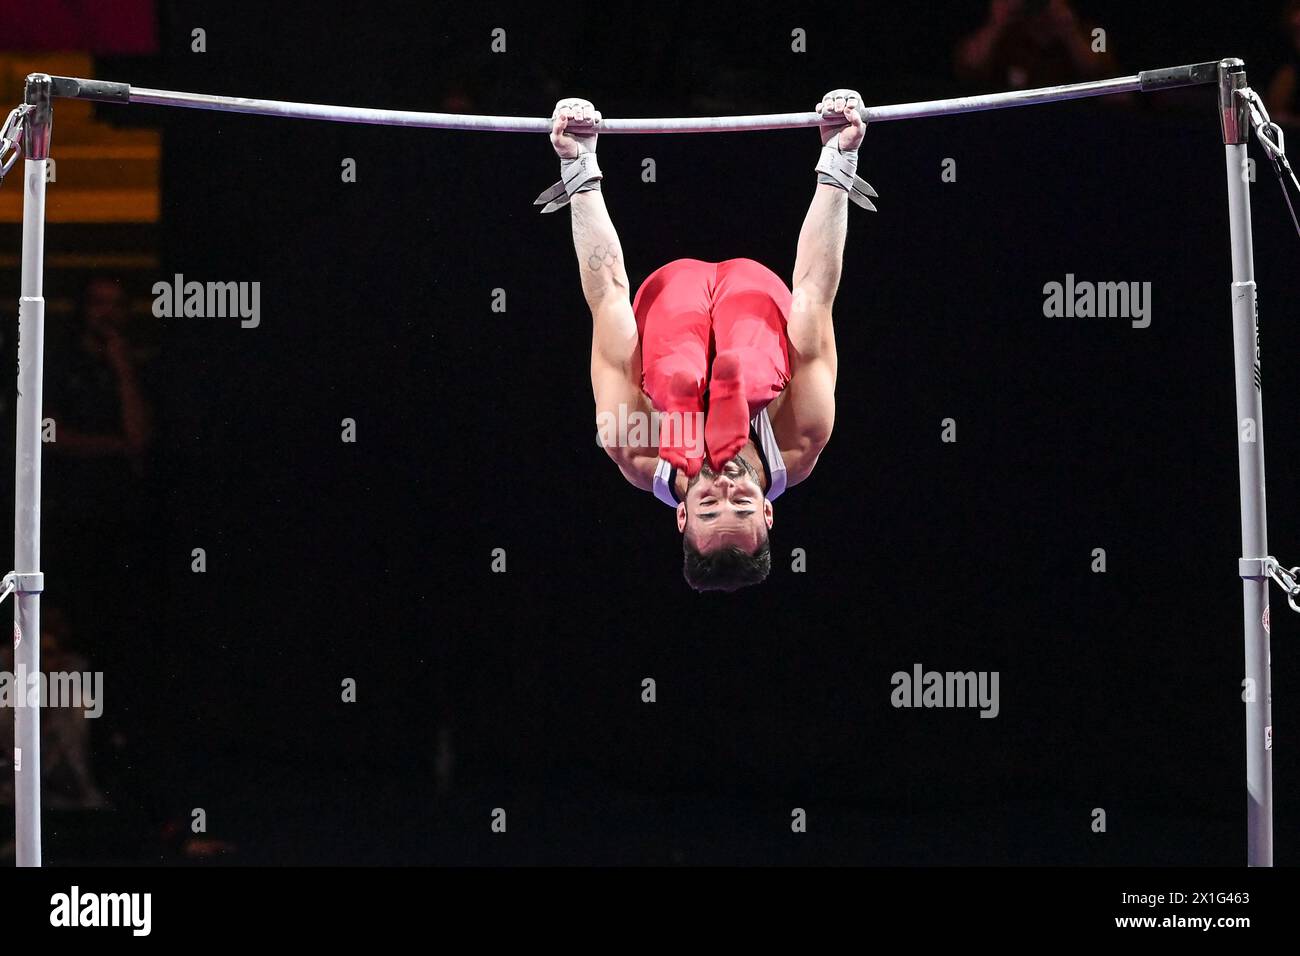 James Hall (Grande-Bretagne). Championnats d'Europe Munich 2022 : gymnastique artistique, finale de barre horizontale masculine Banque D'Images